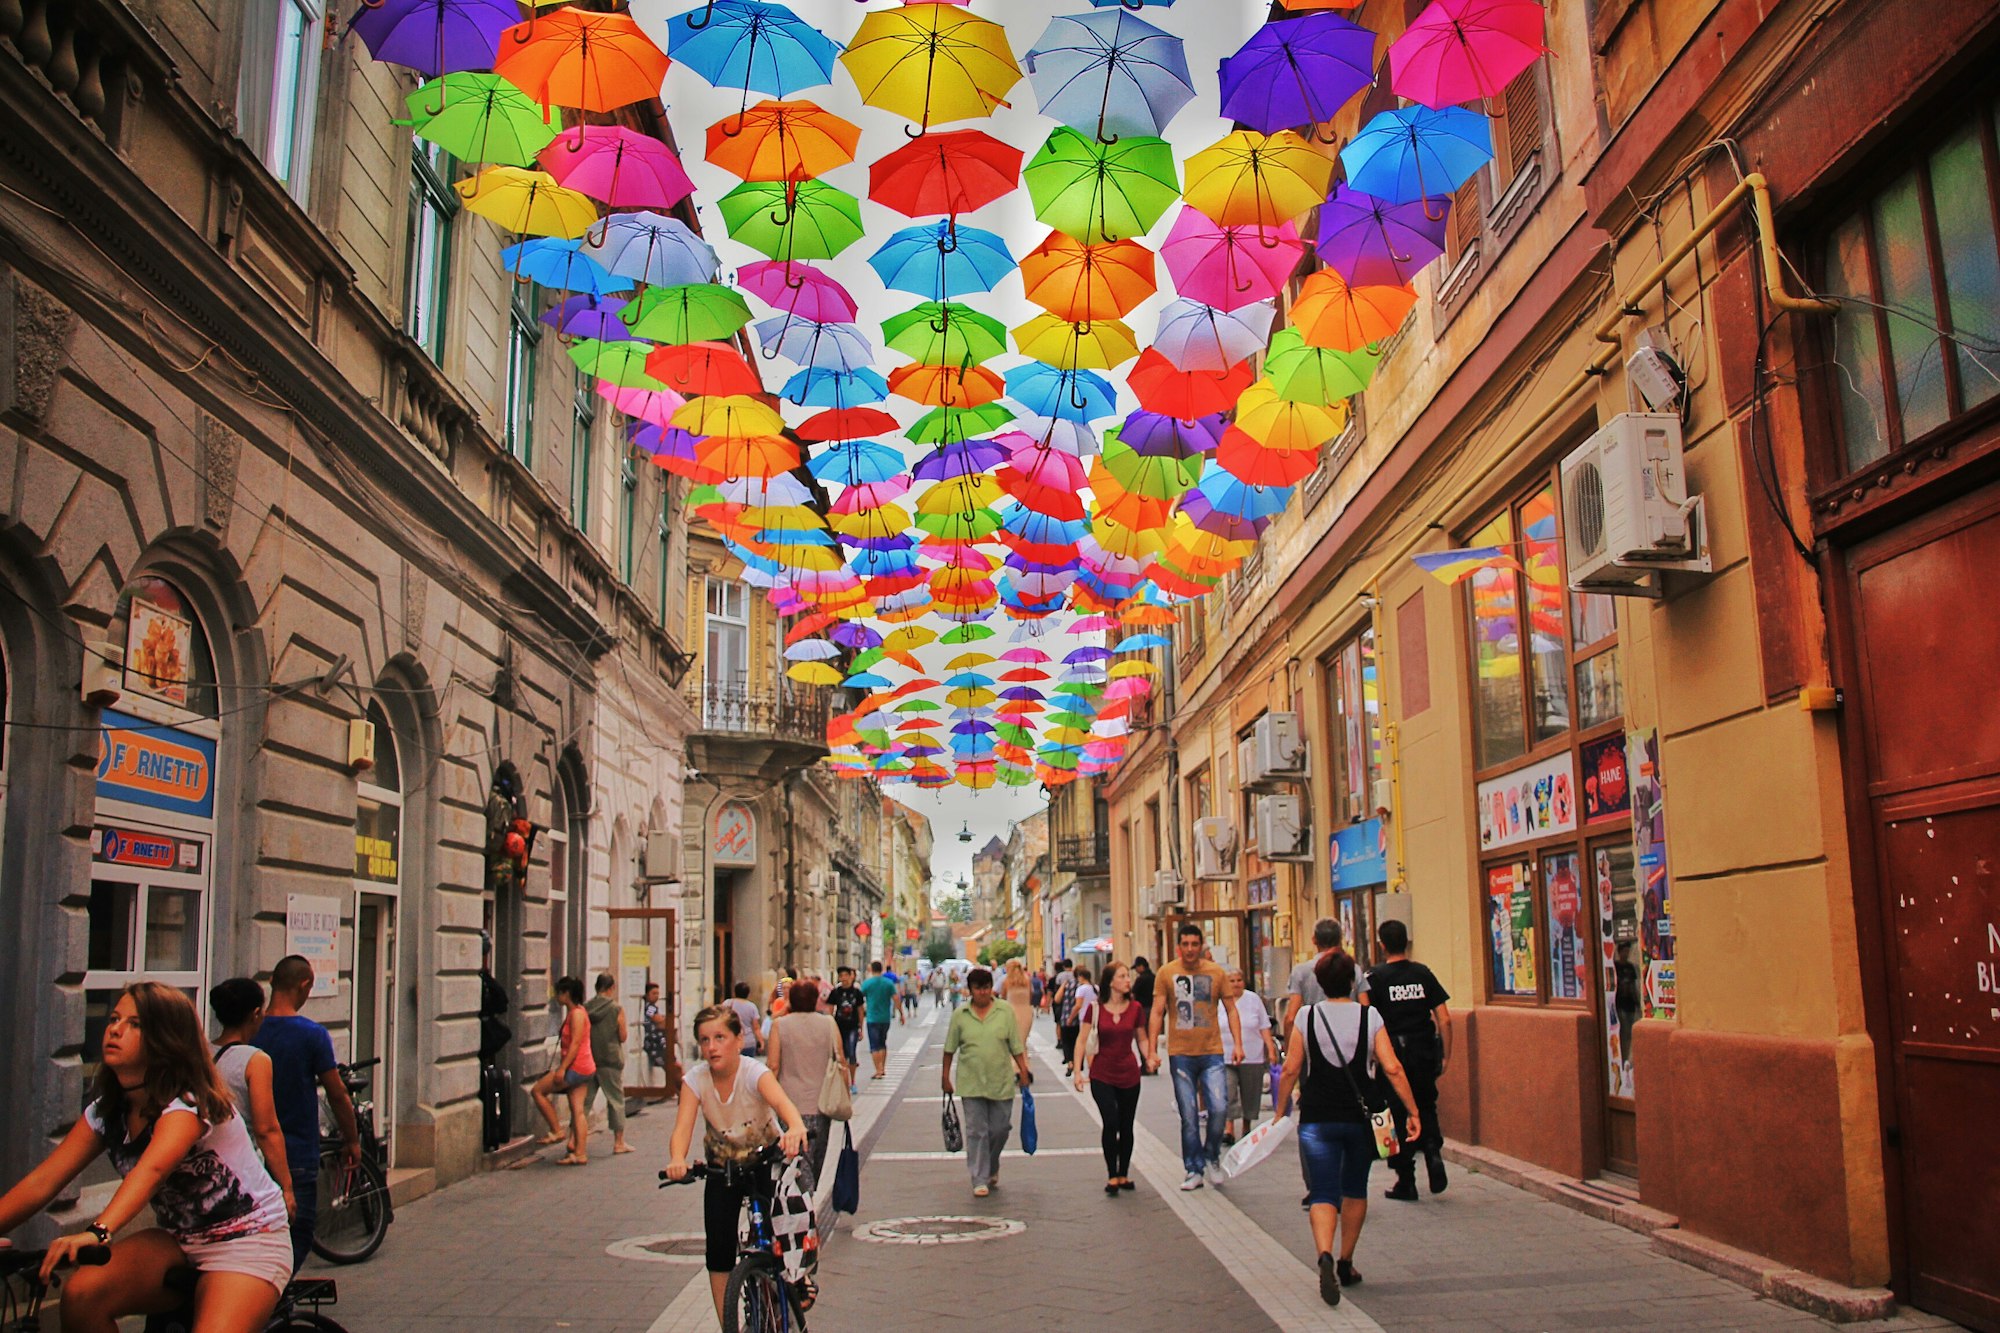 Umbrella Street in Romania